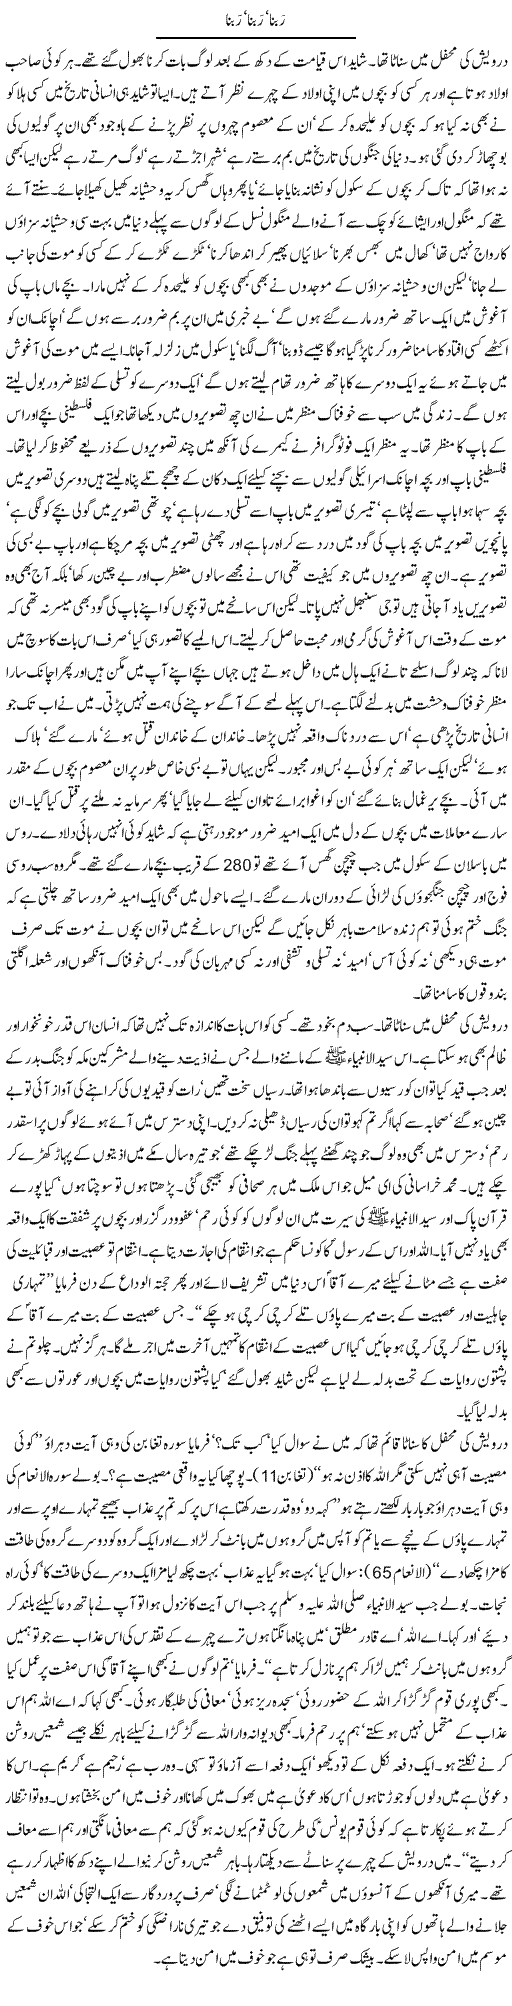 Rabbana, Rabbana, Rabbana | Orya Maqbool Jan | Daily Urdu Columns